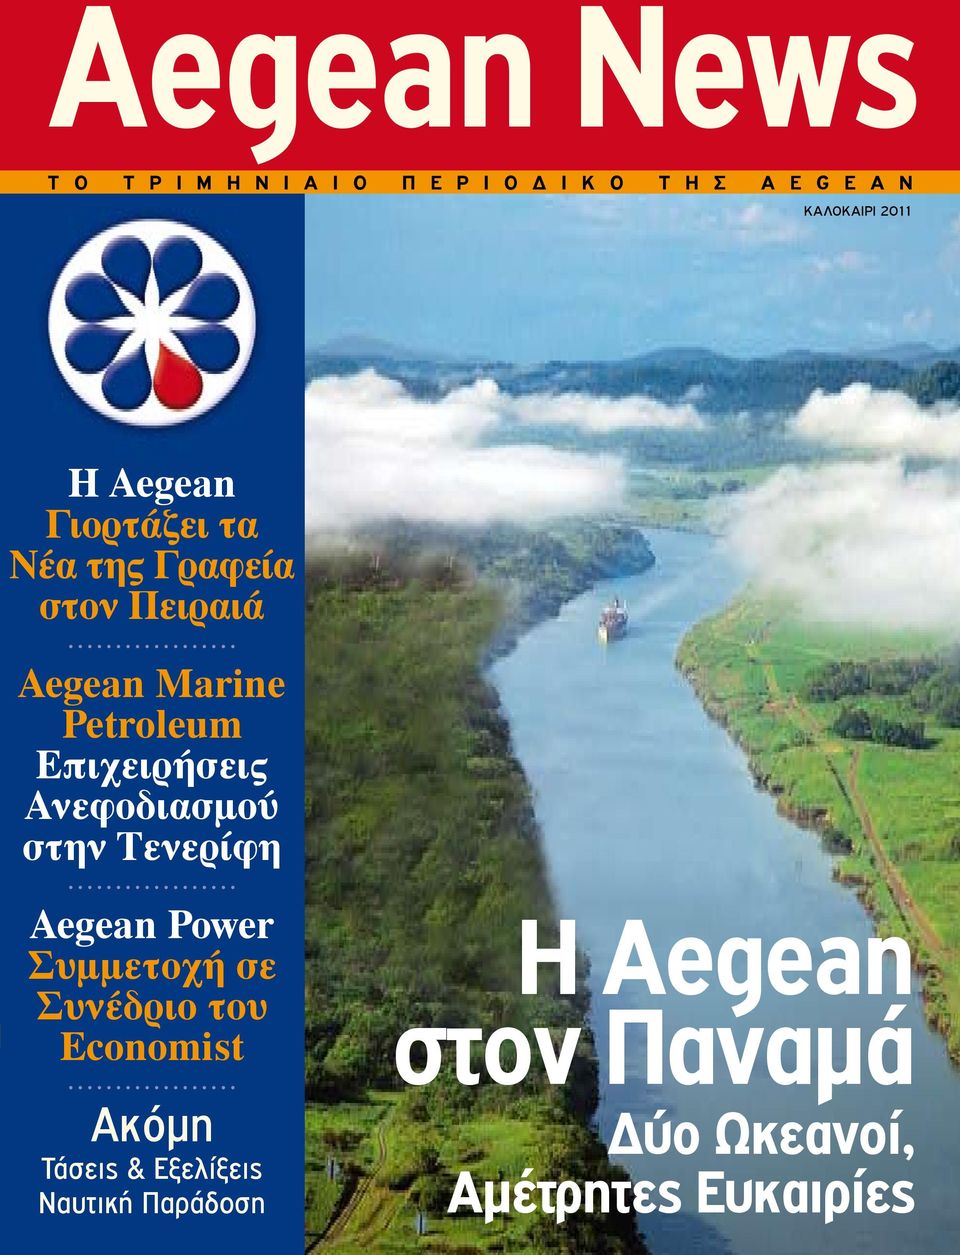 Επιχειρήσεις Ανεφοδιασμού στην Τενερίφη Aegean Power Συμμετοχή σε Συνέδριο του